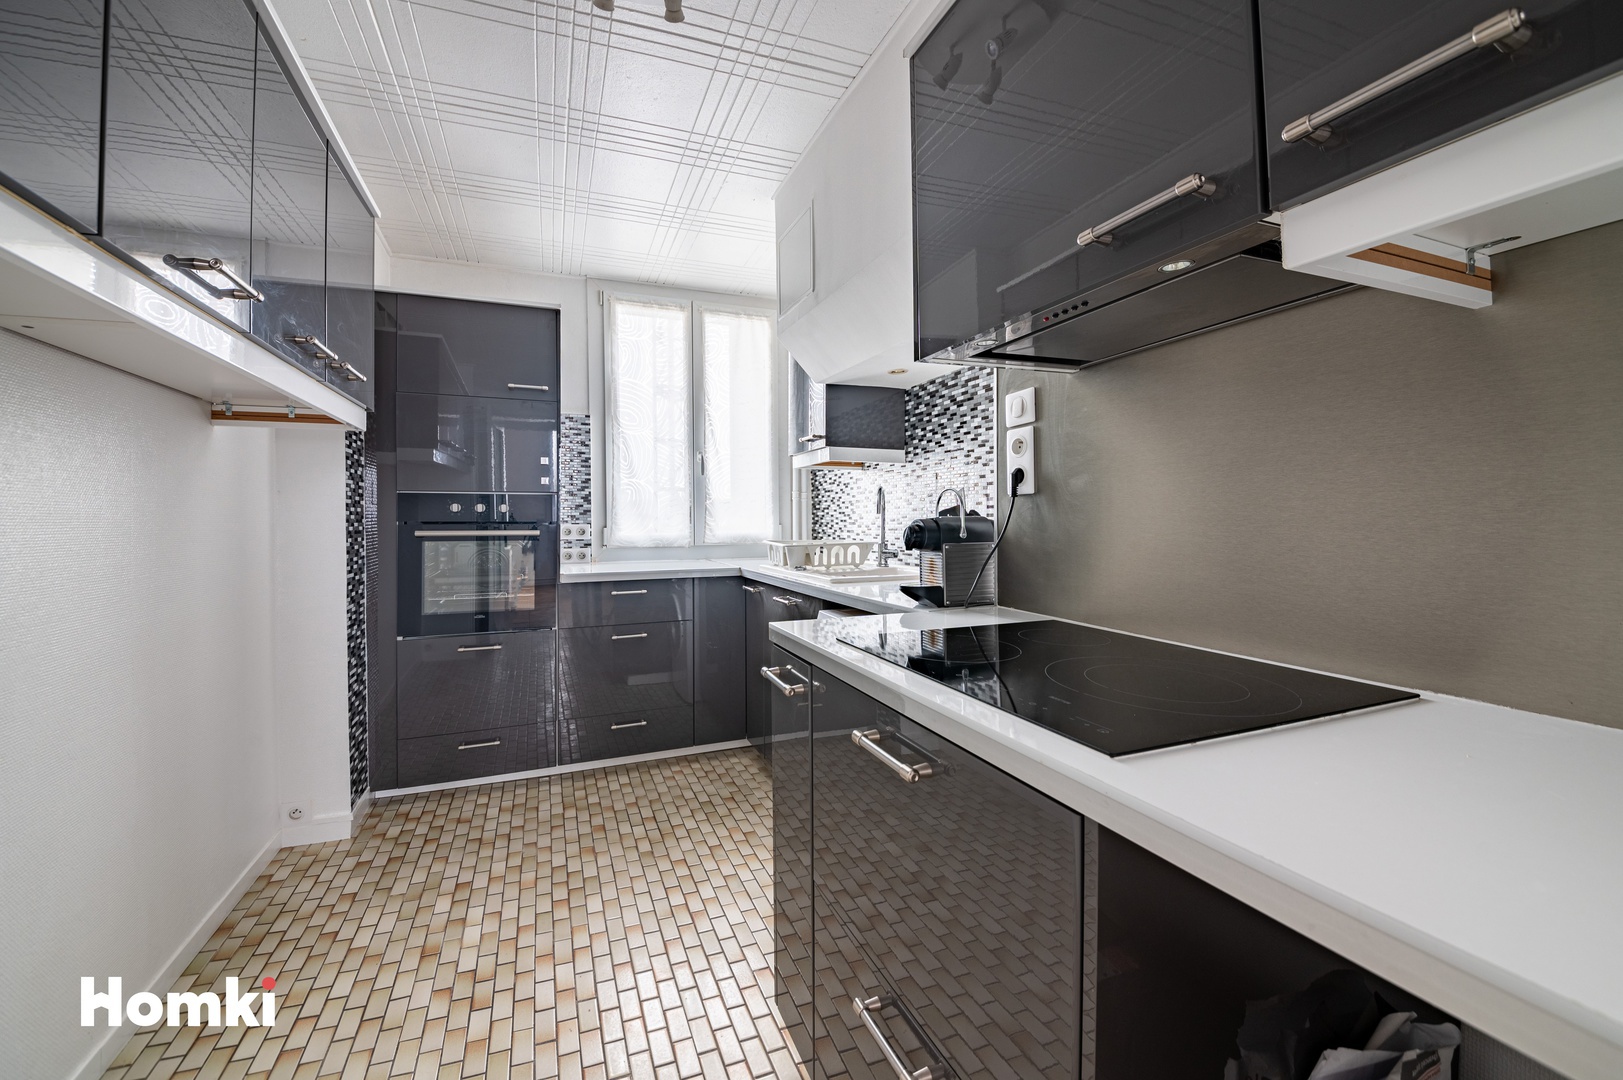 Homki - Vente Appartement  de 57.0 m² à La Mulatière 69350